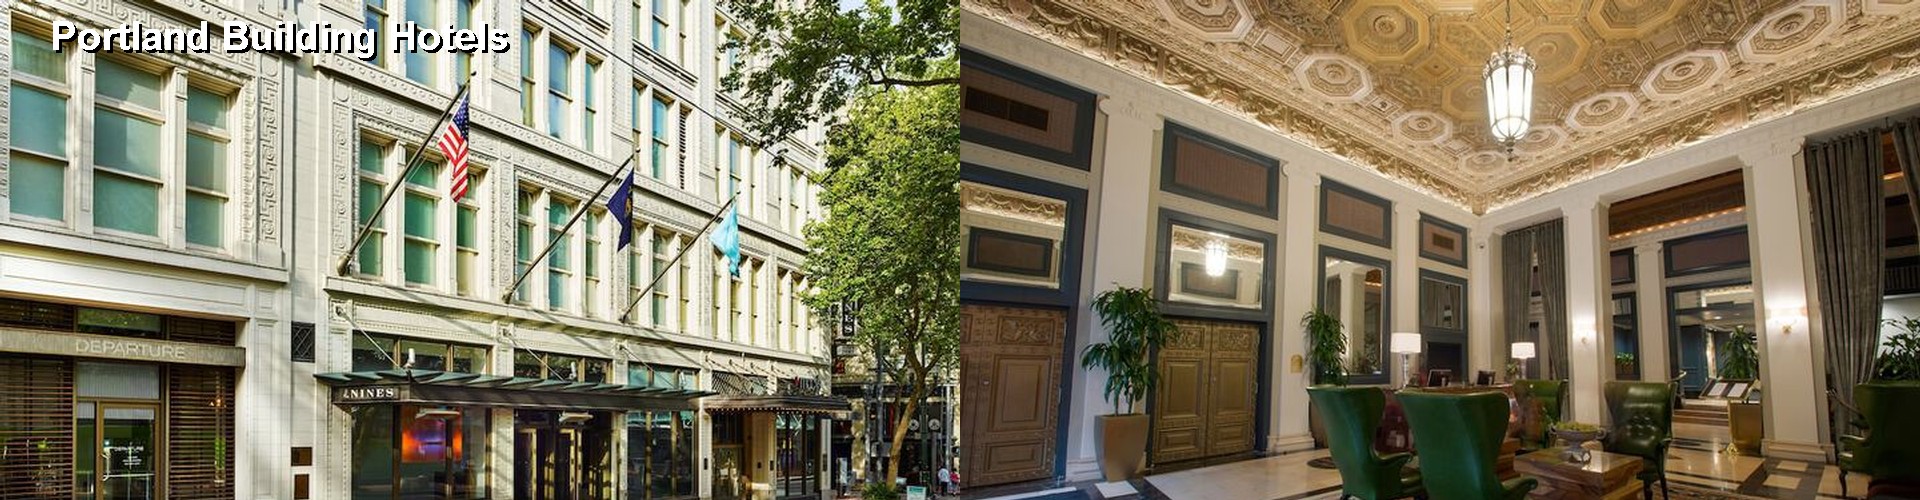 5 Best Hotels near Portland Building